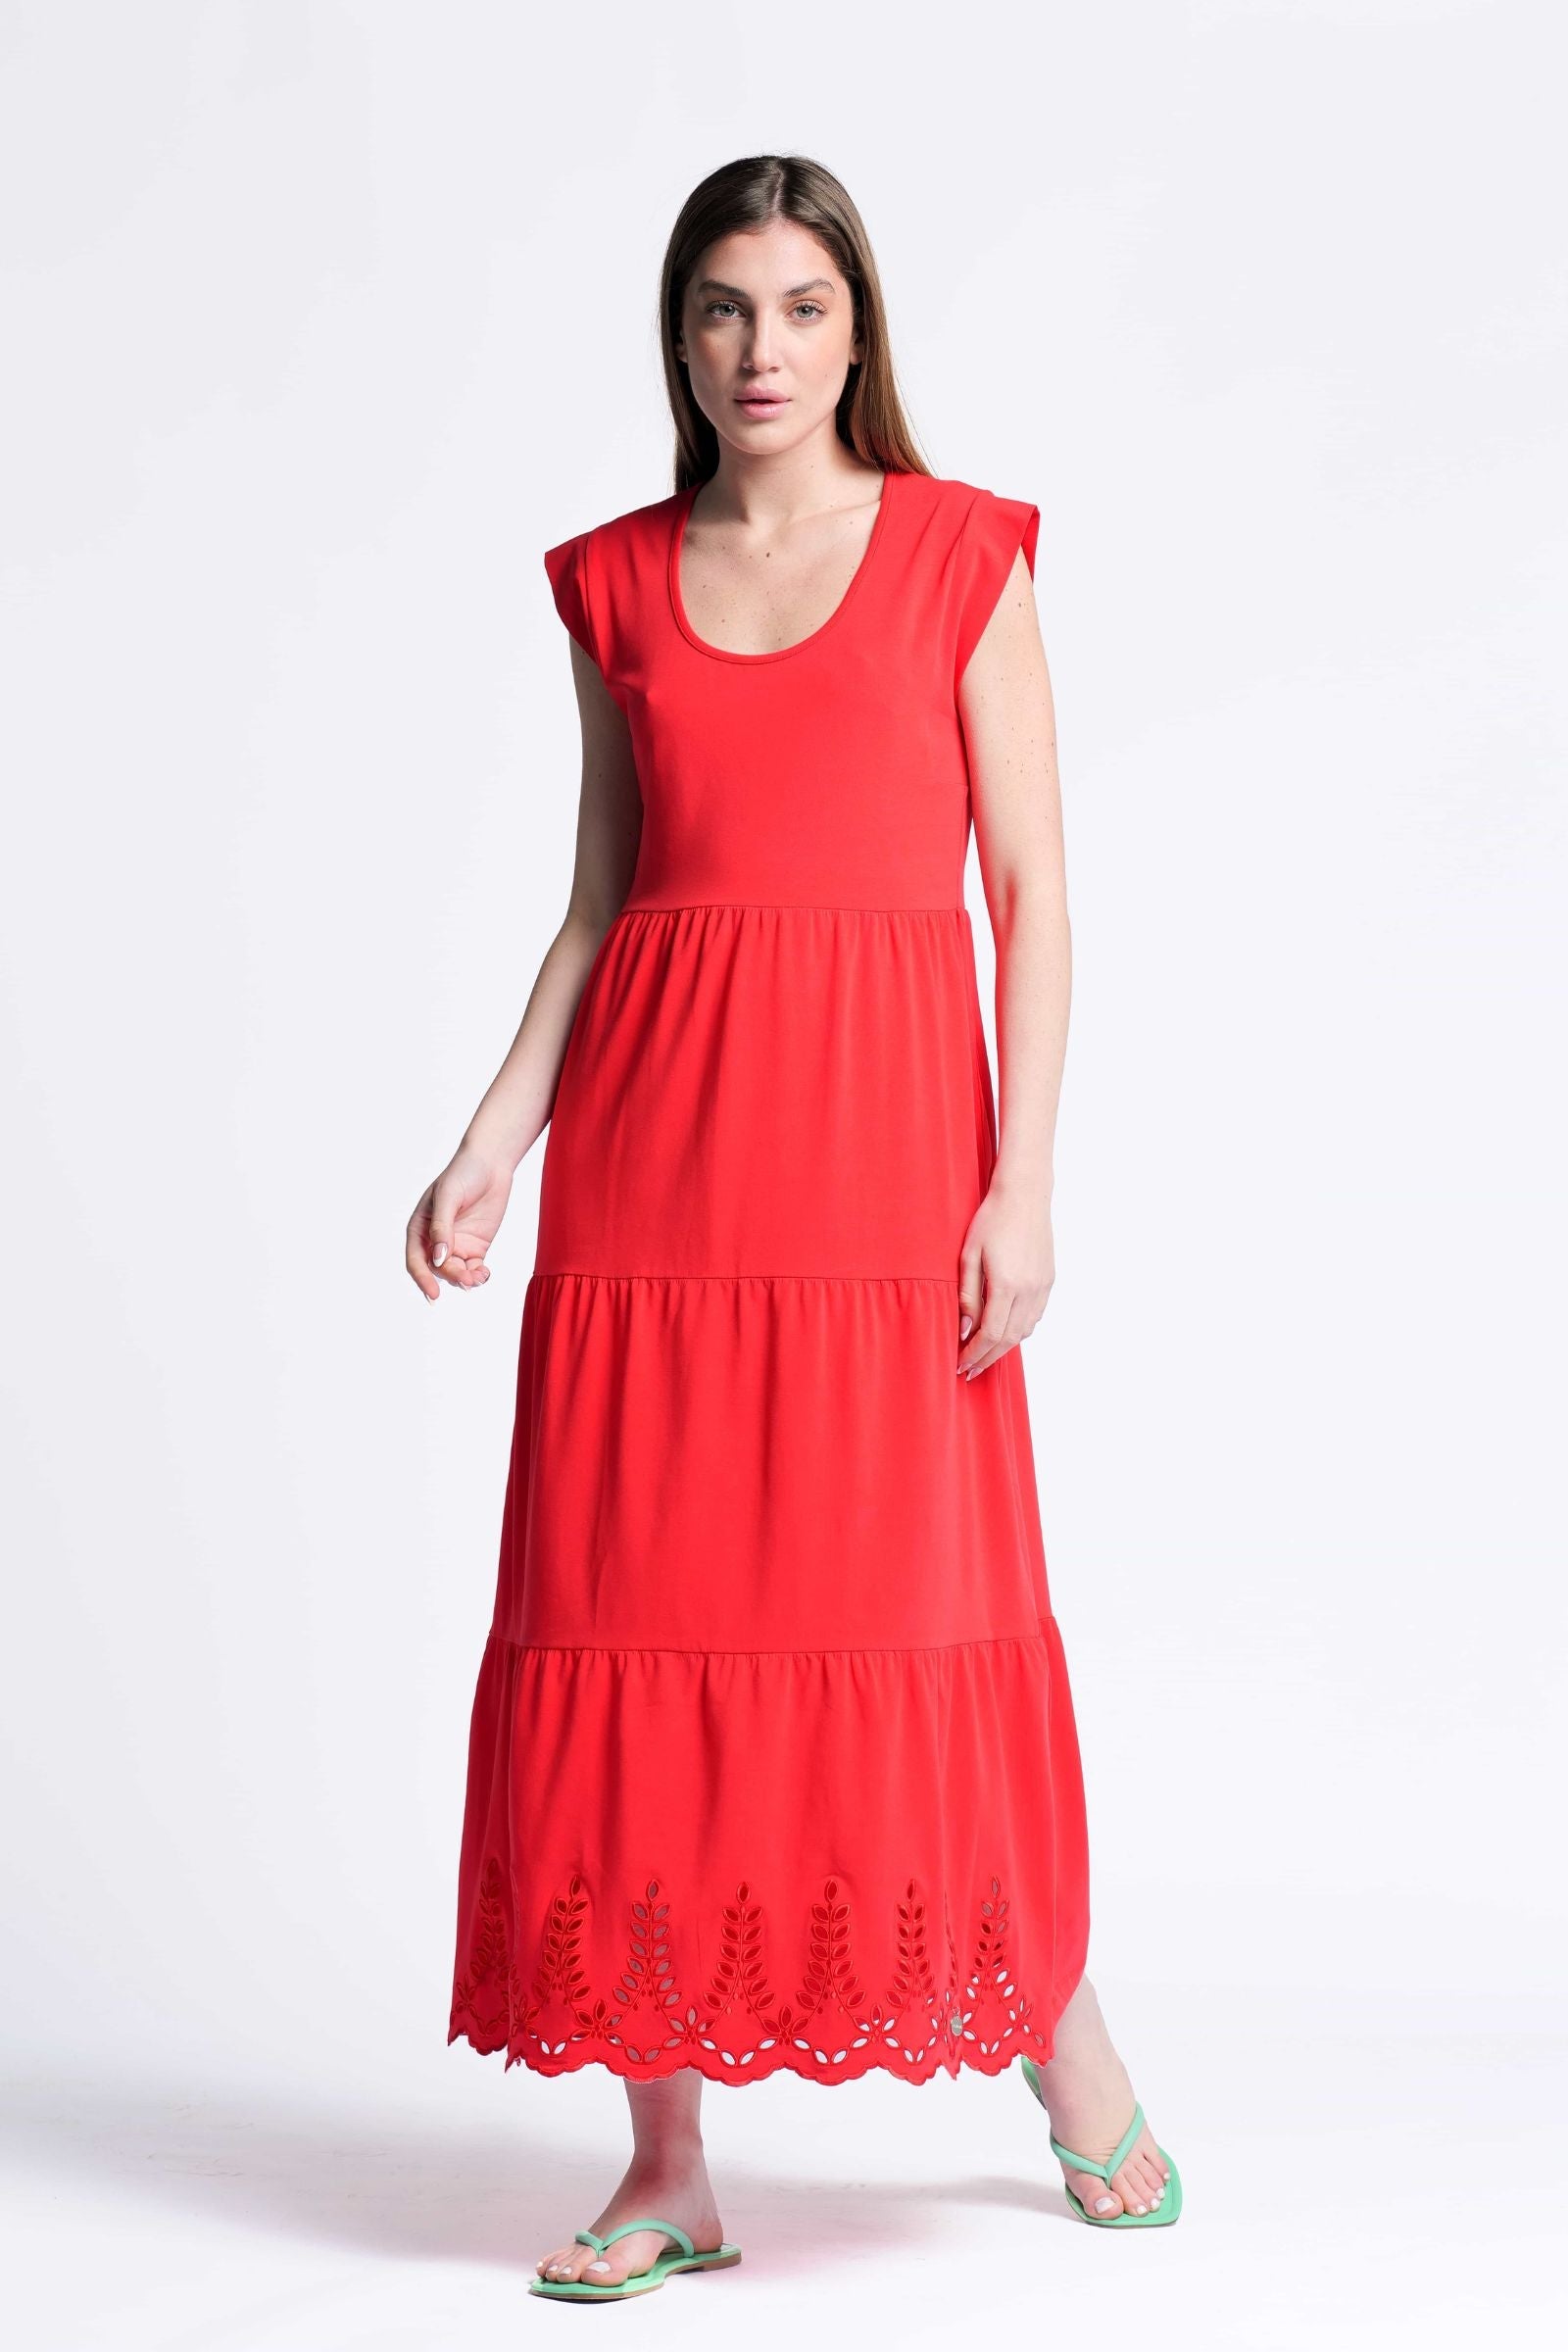 Vestido rojo algodon largo con bordado al tono Lolitas&L - lolitasyl.com